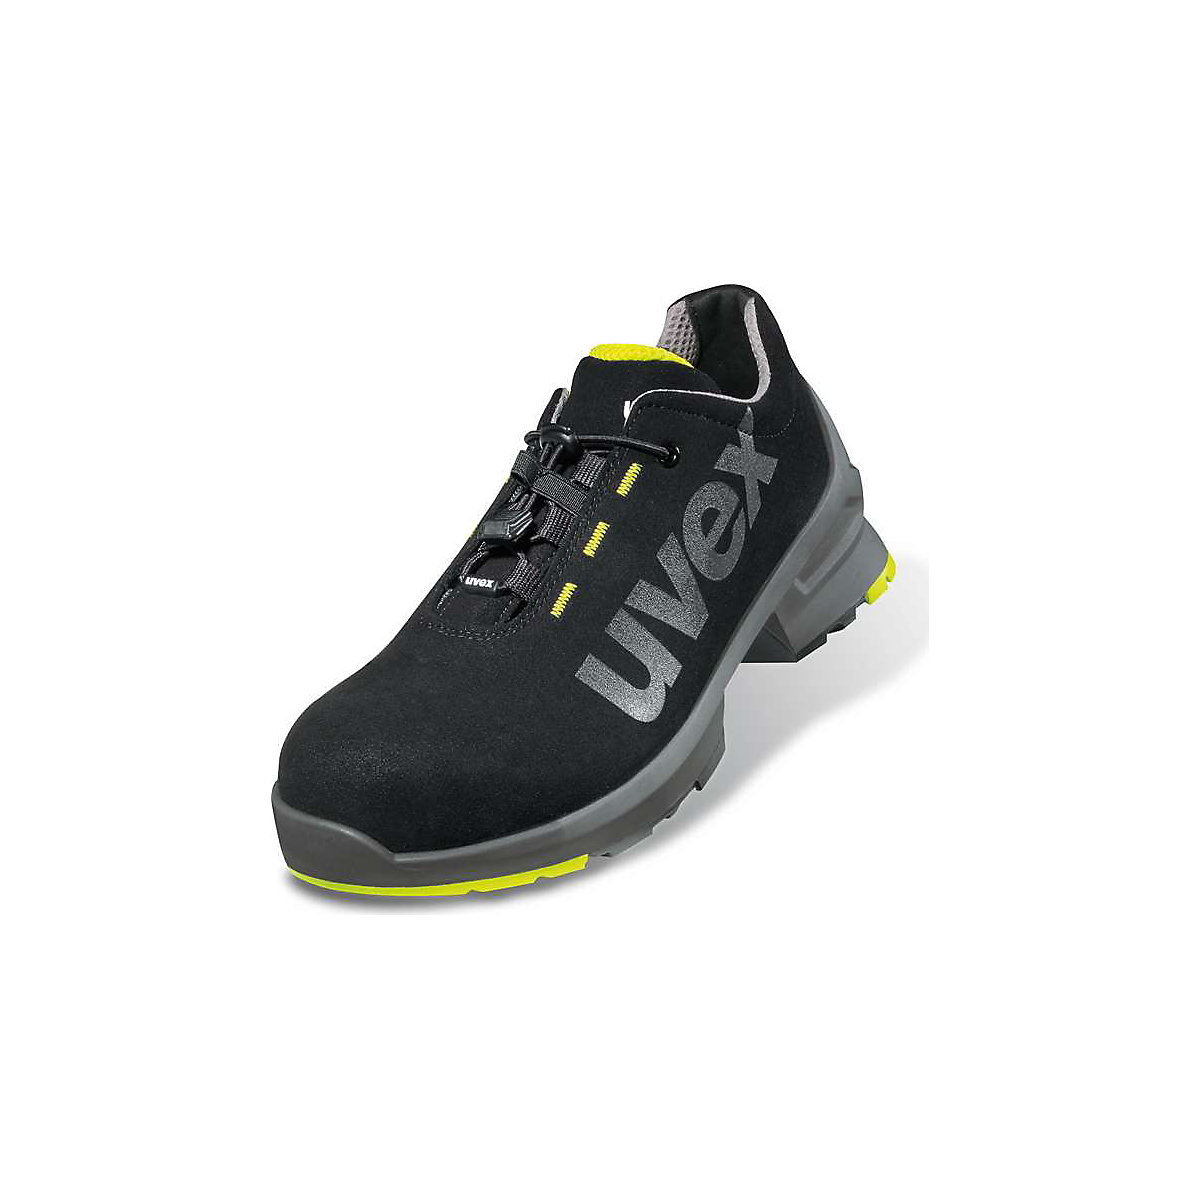 Polvisoki zaščitni čevlji ESD S2 SRC – Uvex